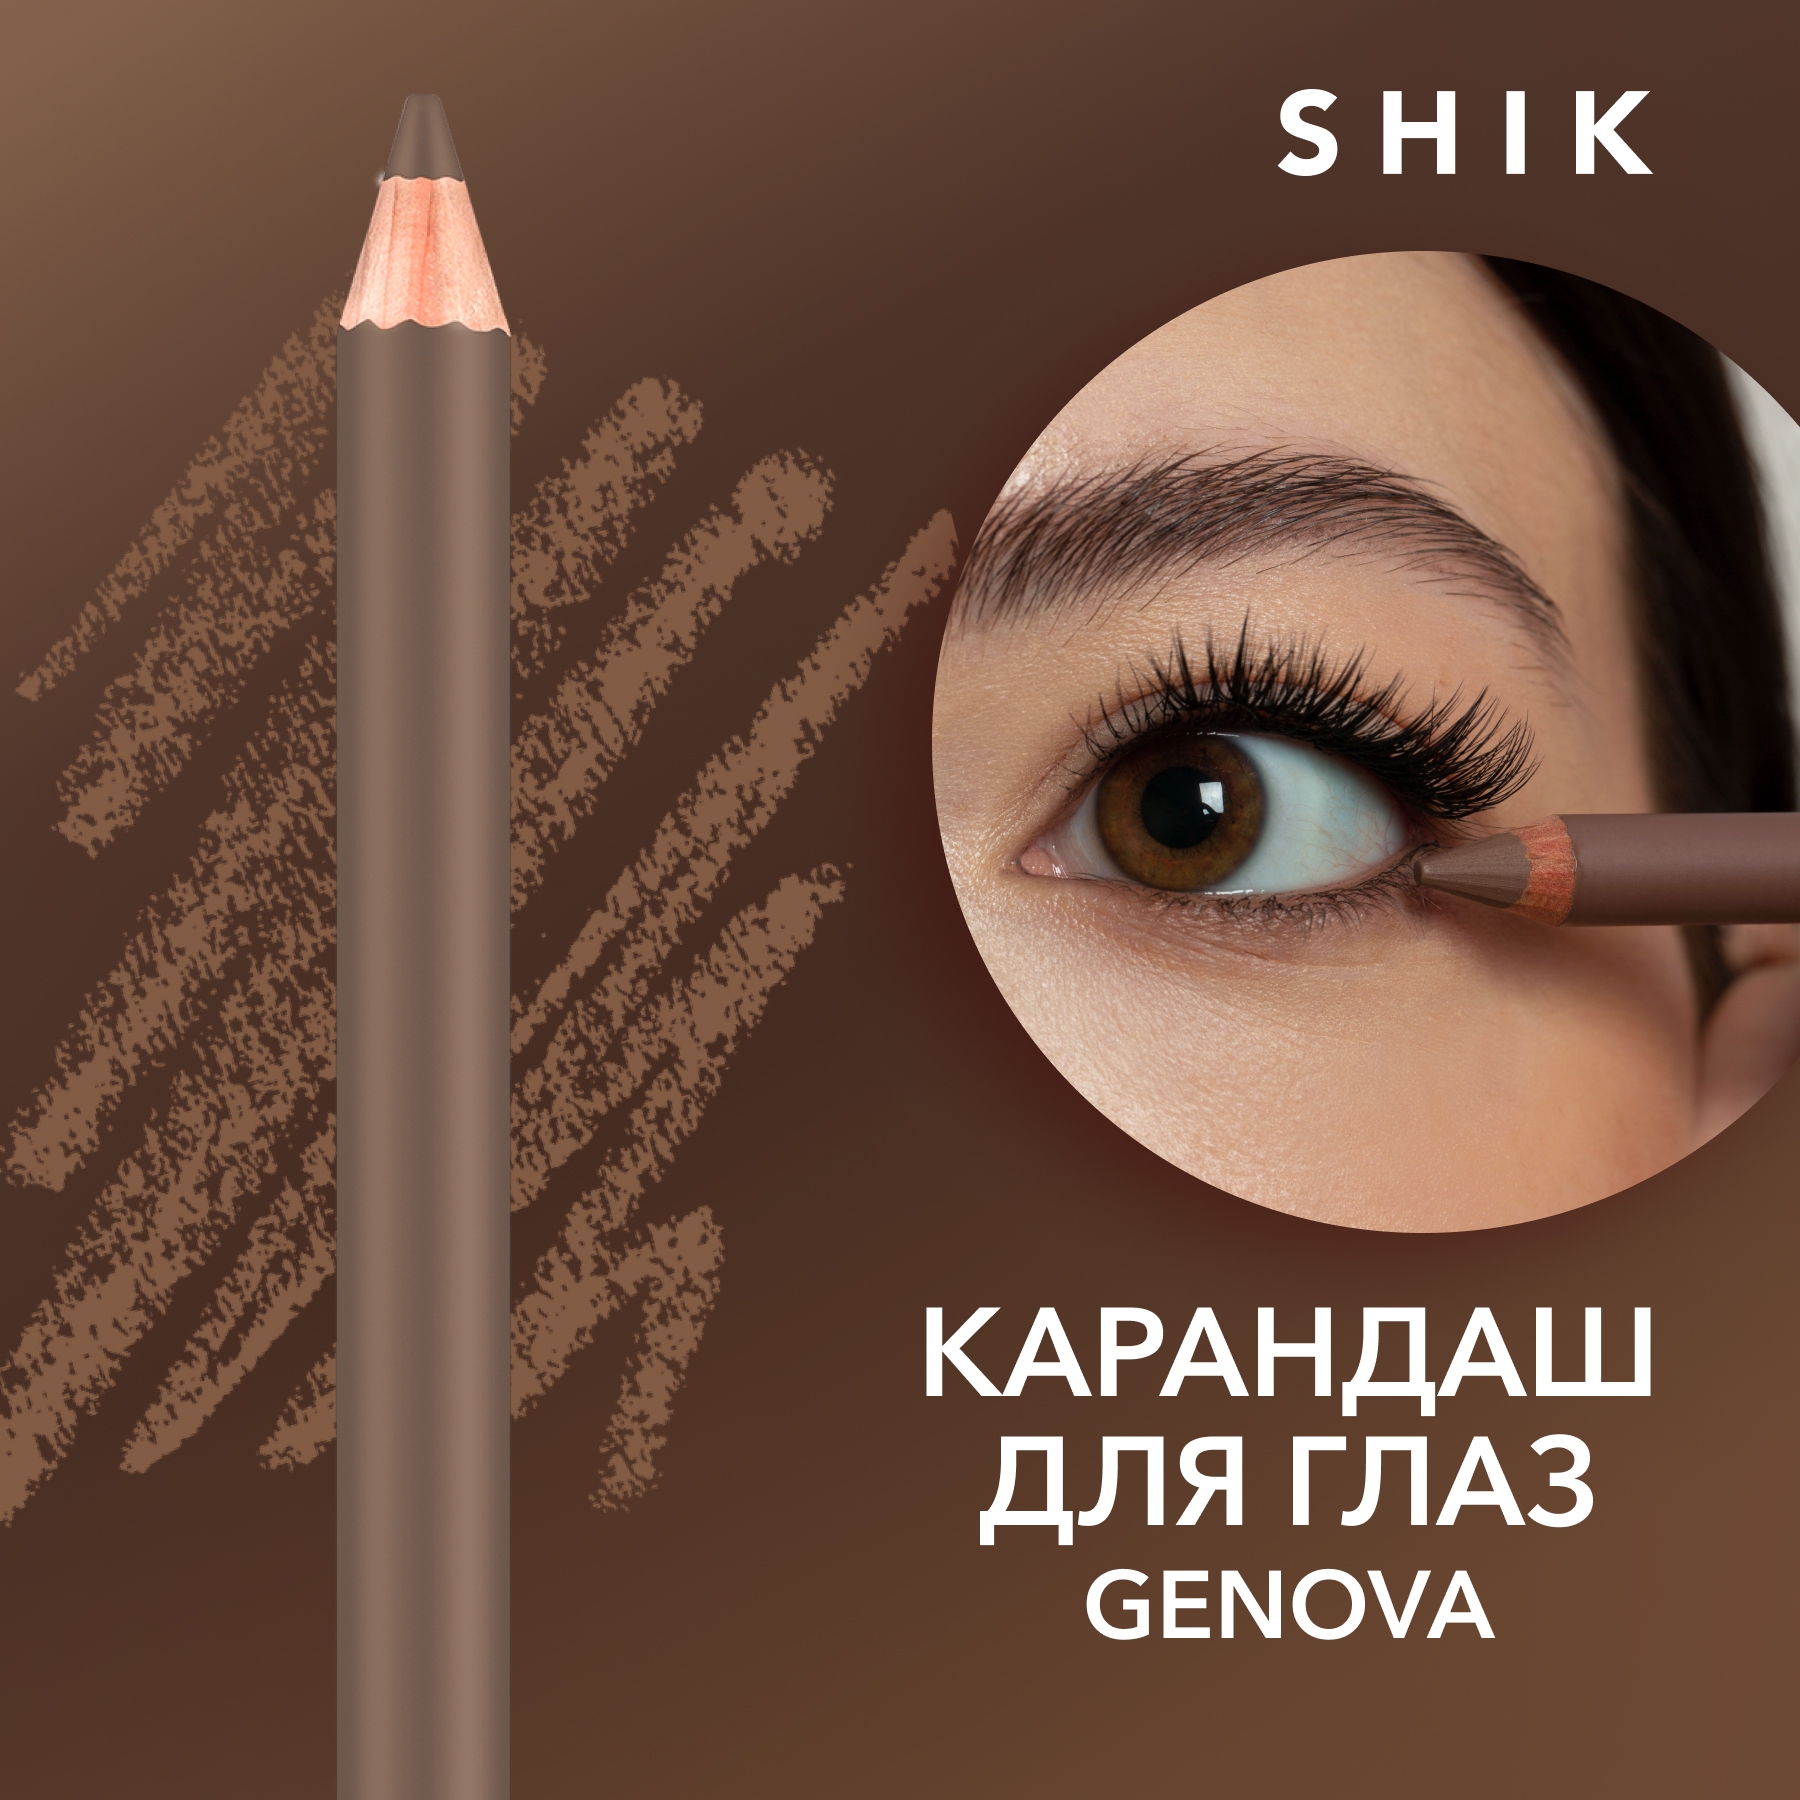 Карандаш для глаз SHIK Eye Pencil т.Genova